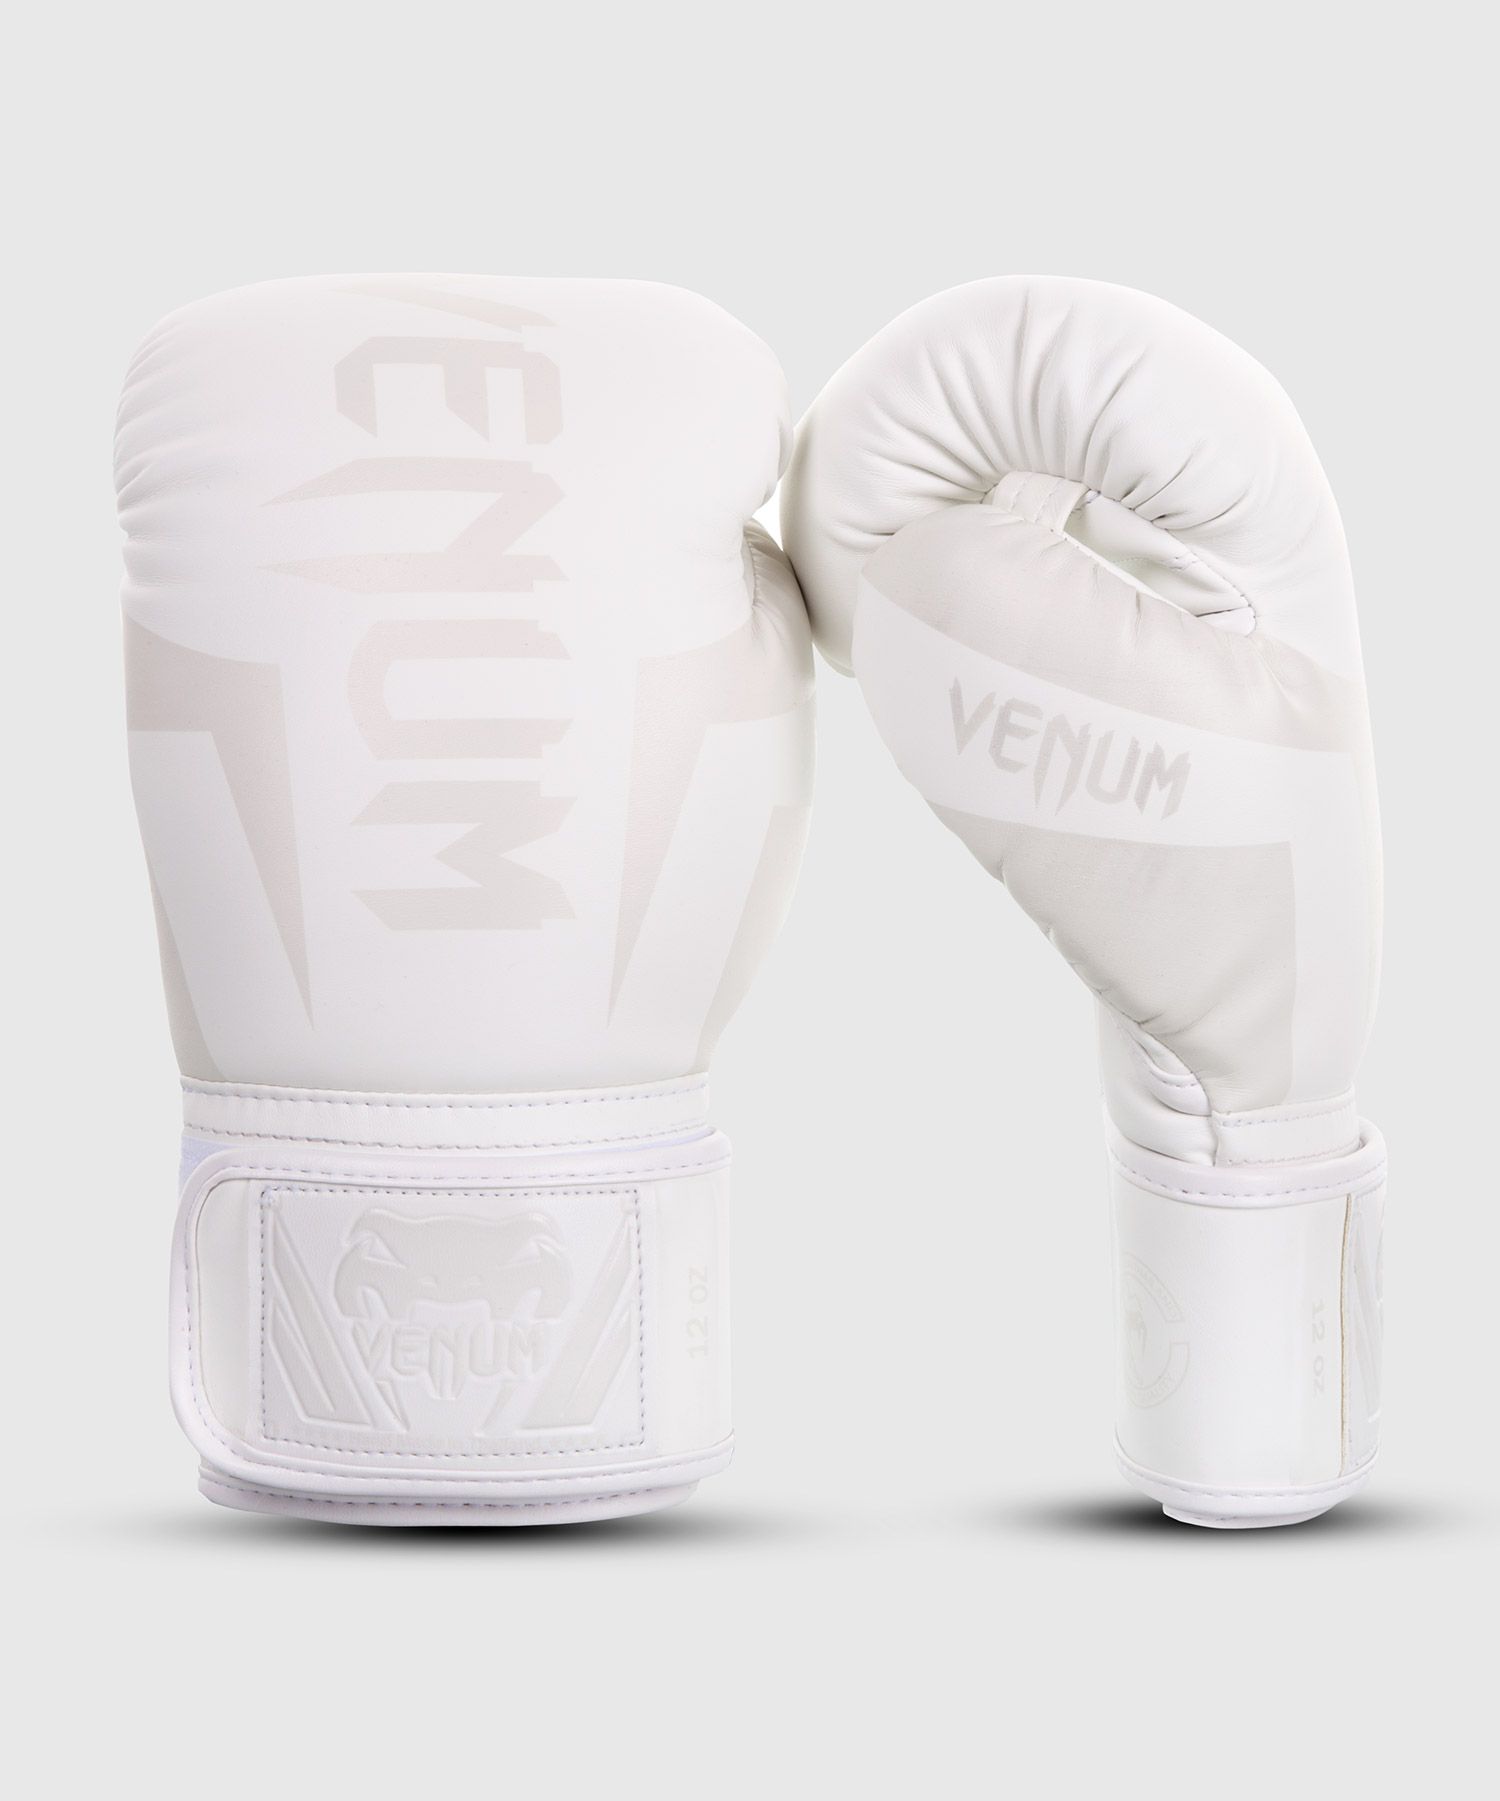 Venum Elite Boxhandschuhe - Weiß/Weiß